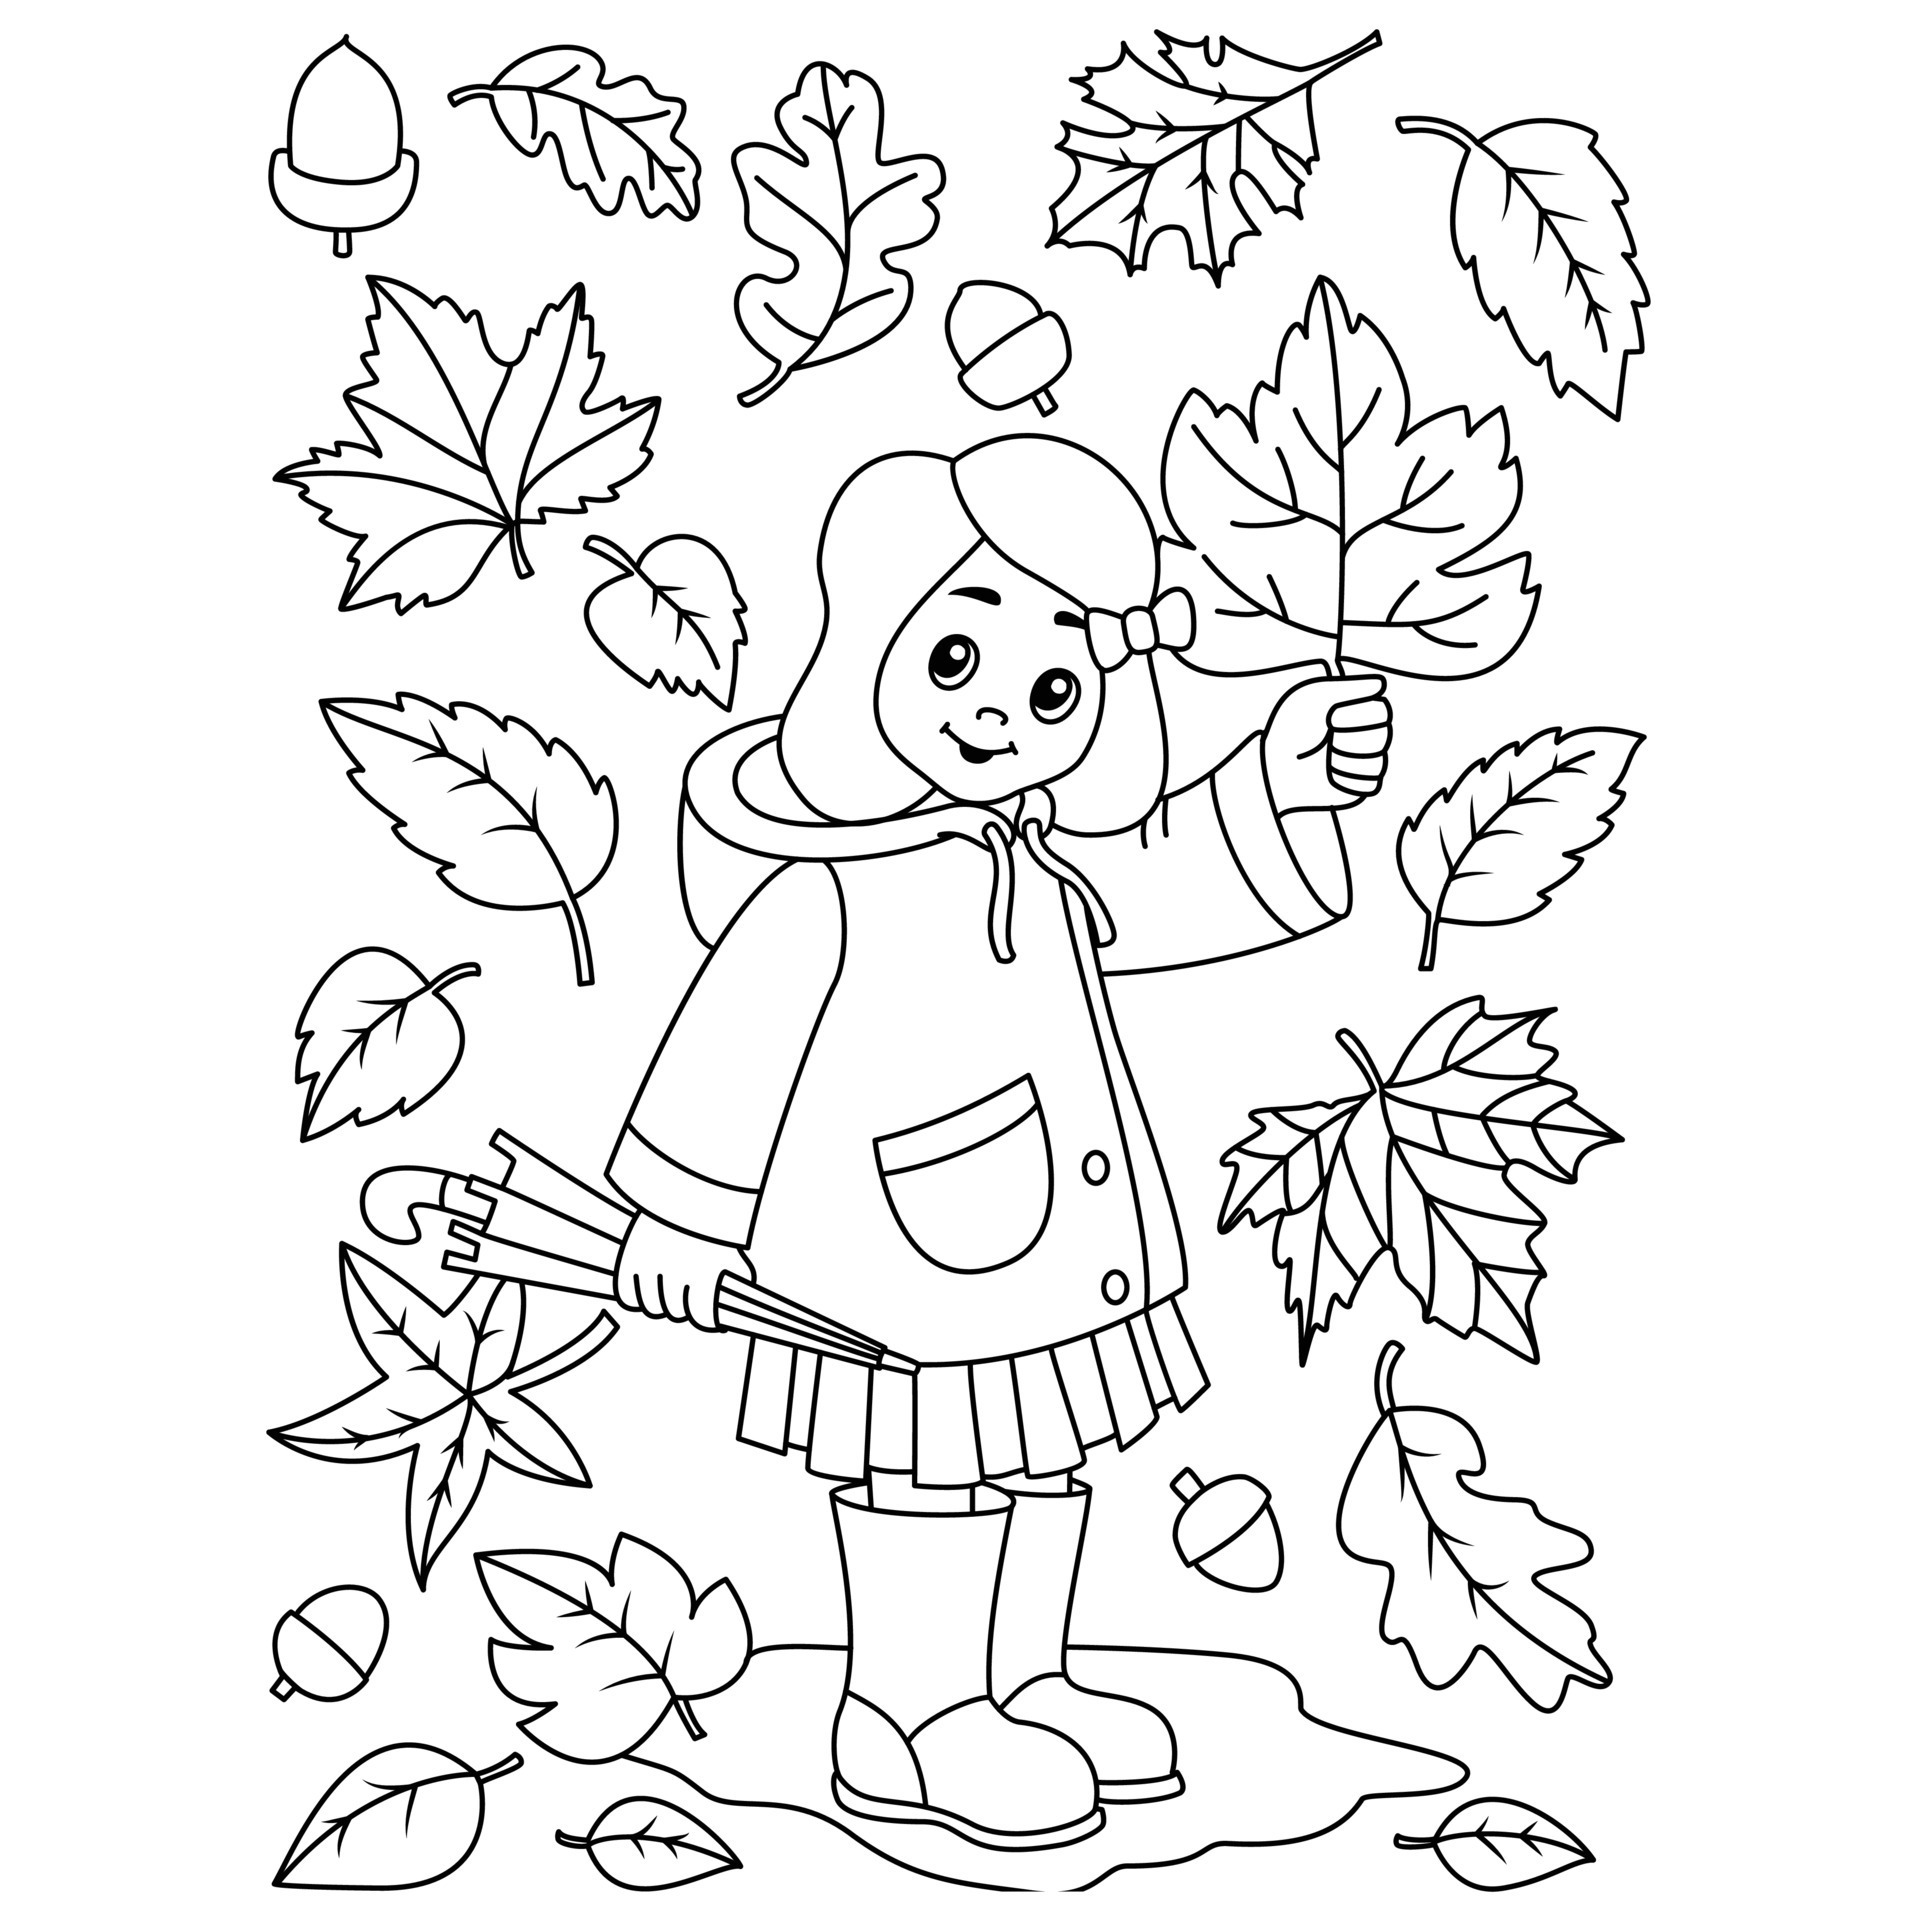 How to Draw a Fall Tree - HelloArtsy